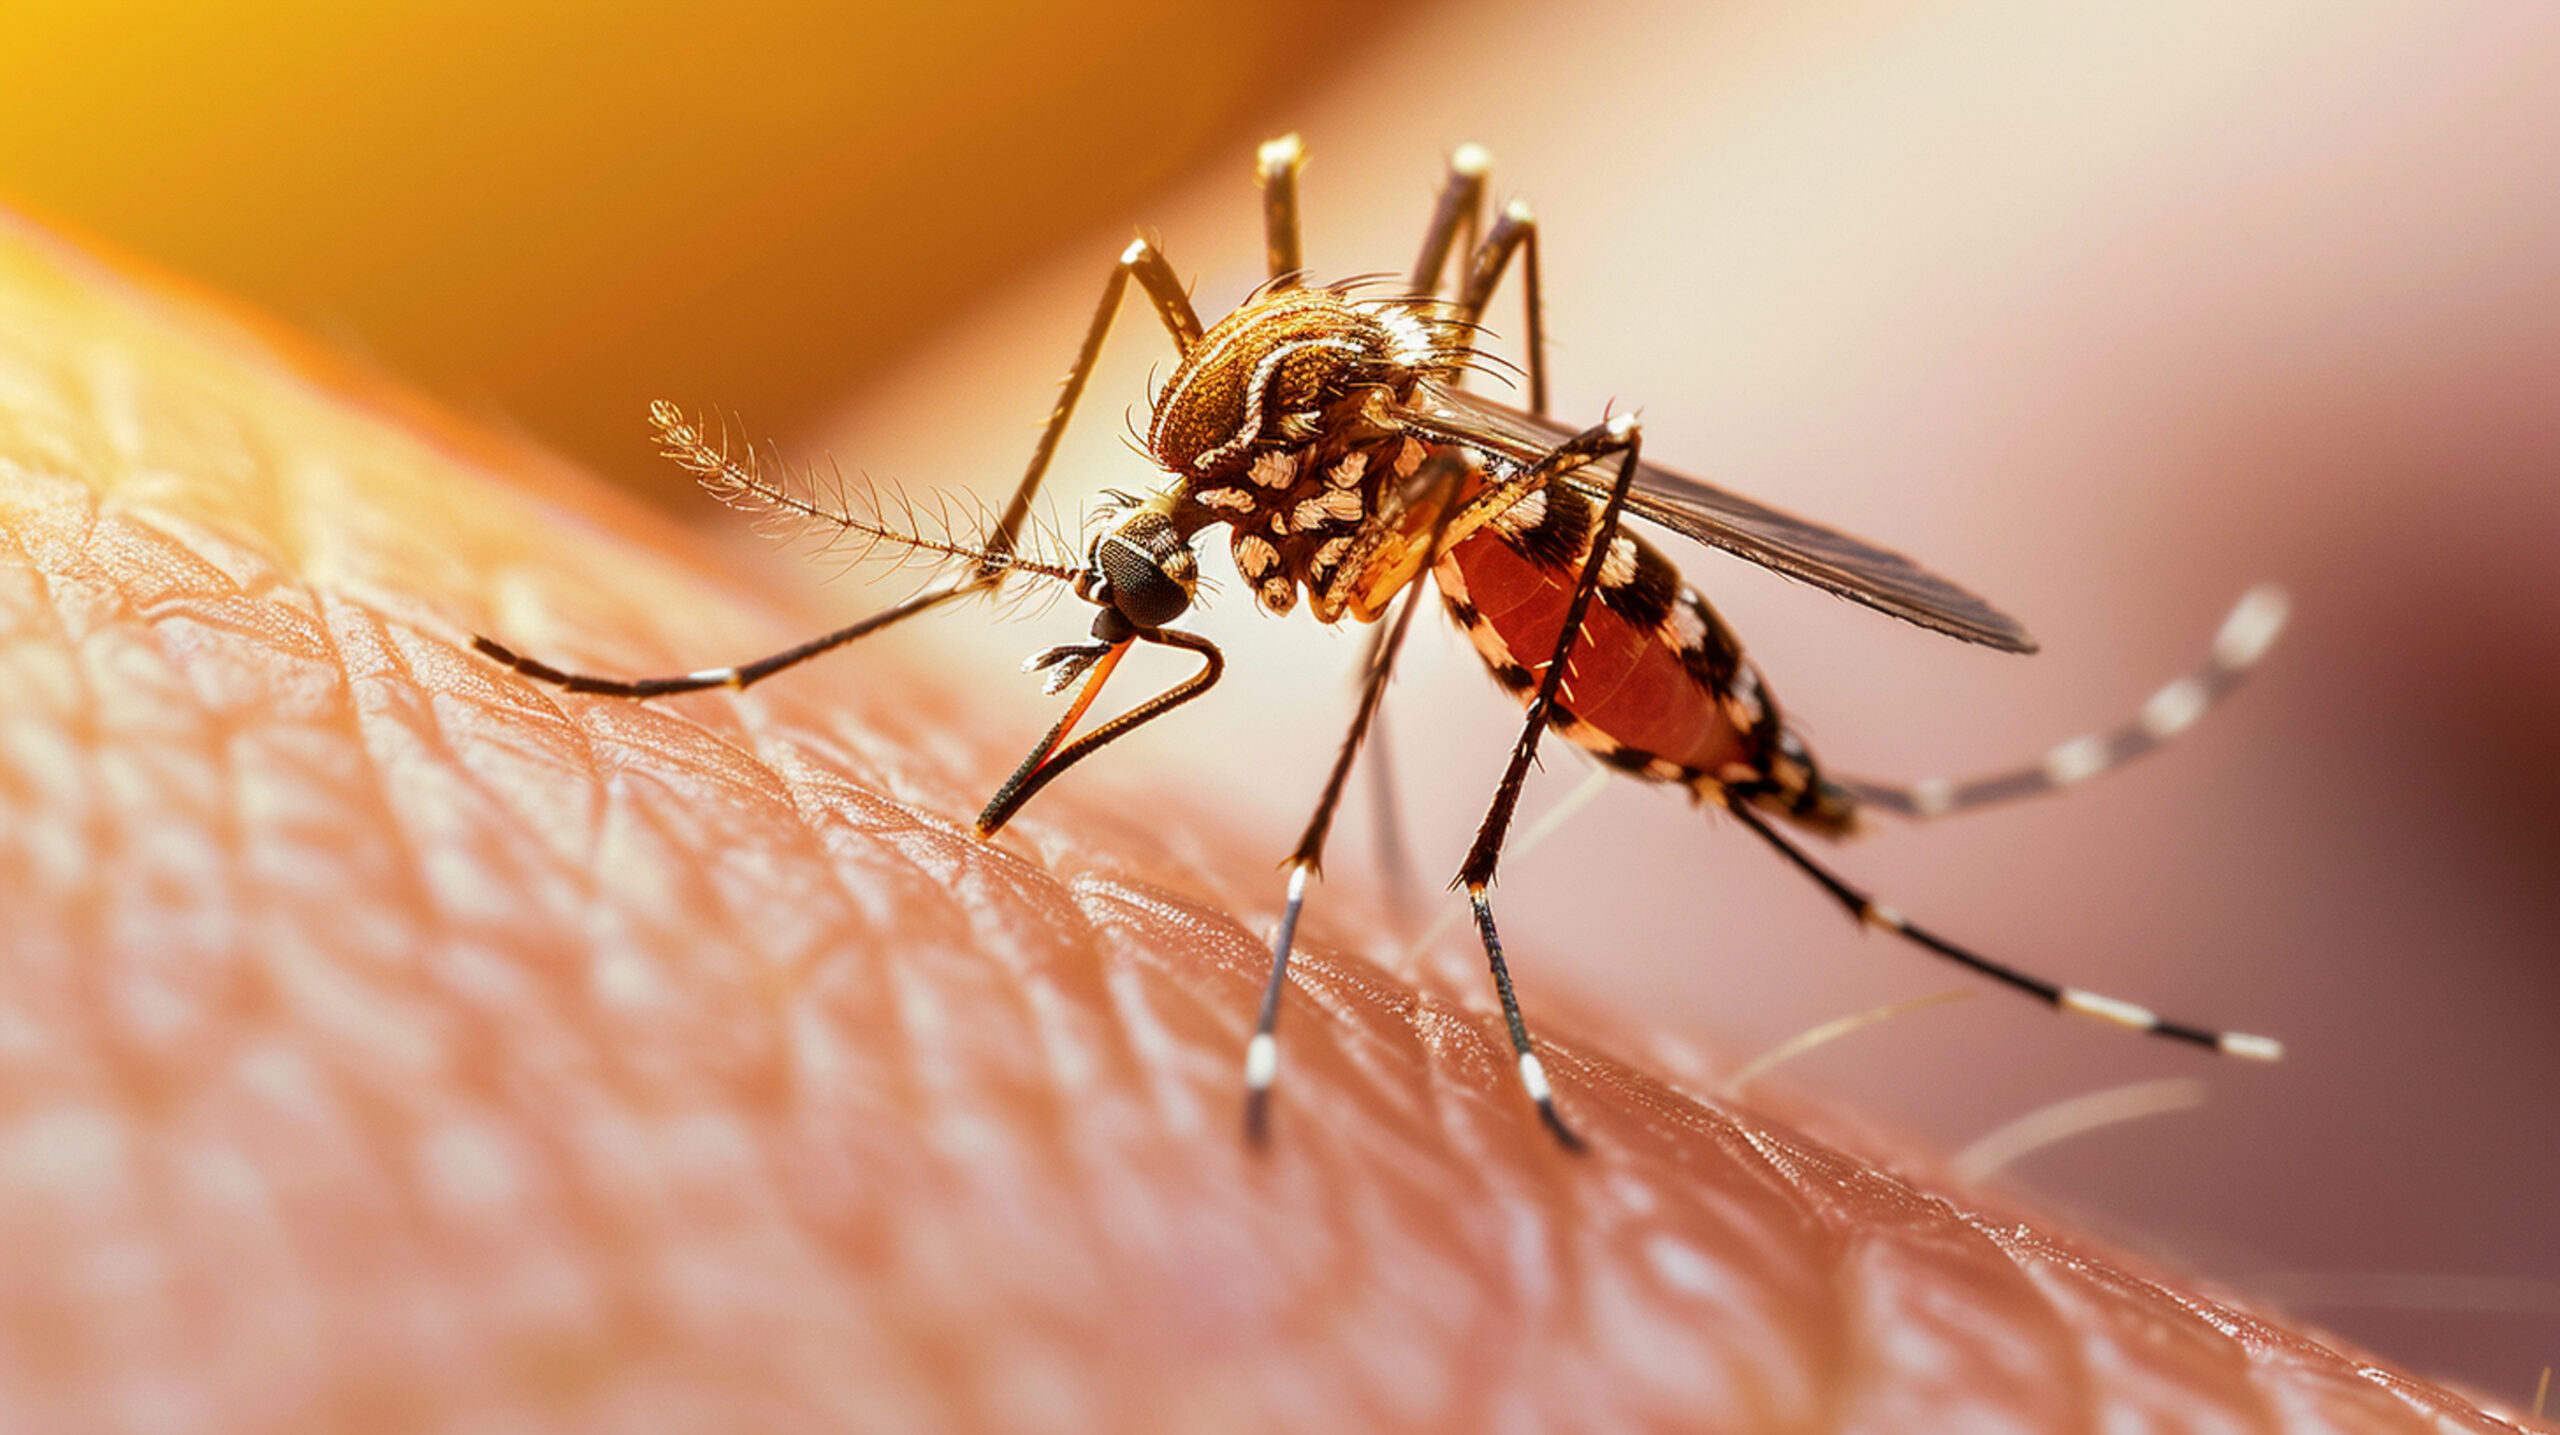 Dengue Fever|ഡെങ്കിപ്പനി: അപകടസാധ്യത അധികം; വേണം മുന്‍കരുതല്‍